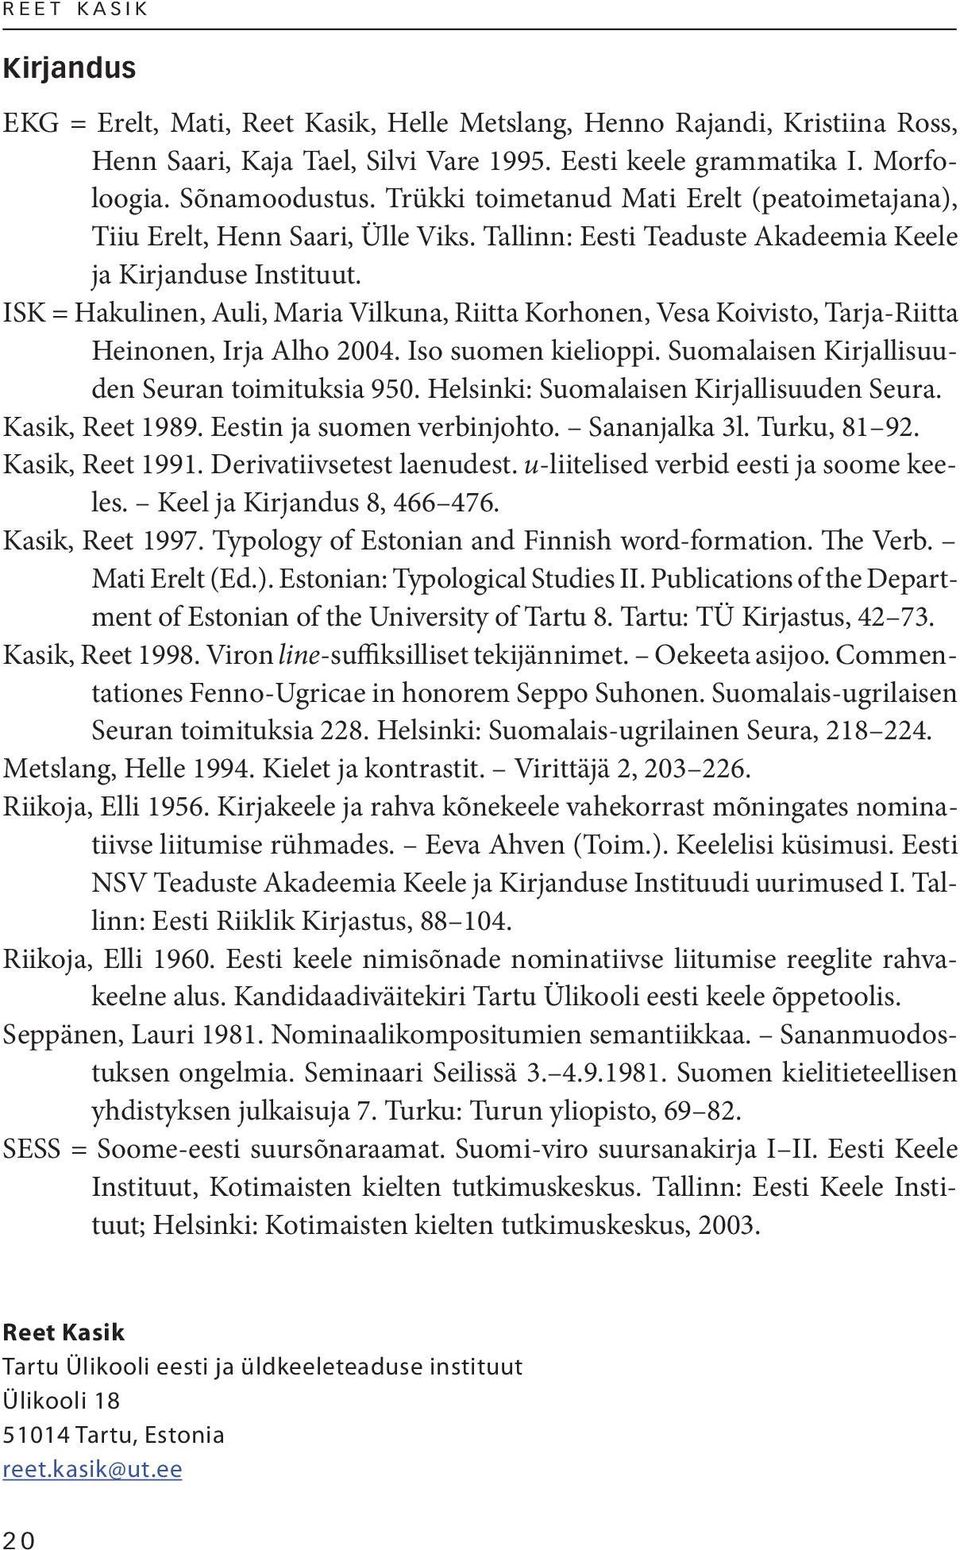 ISK = Hakulinen, Auli, Maria Vilkuna, Riitta Korhonen, Vesa Koivisto, Tarja-Riitta Heinonen, Irja Alho 2004. Iso suomen kielioppi. Suomalaisen Kirjallisuuden Seuran toimituksia 950.